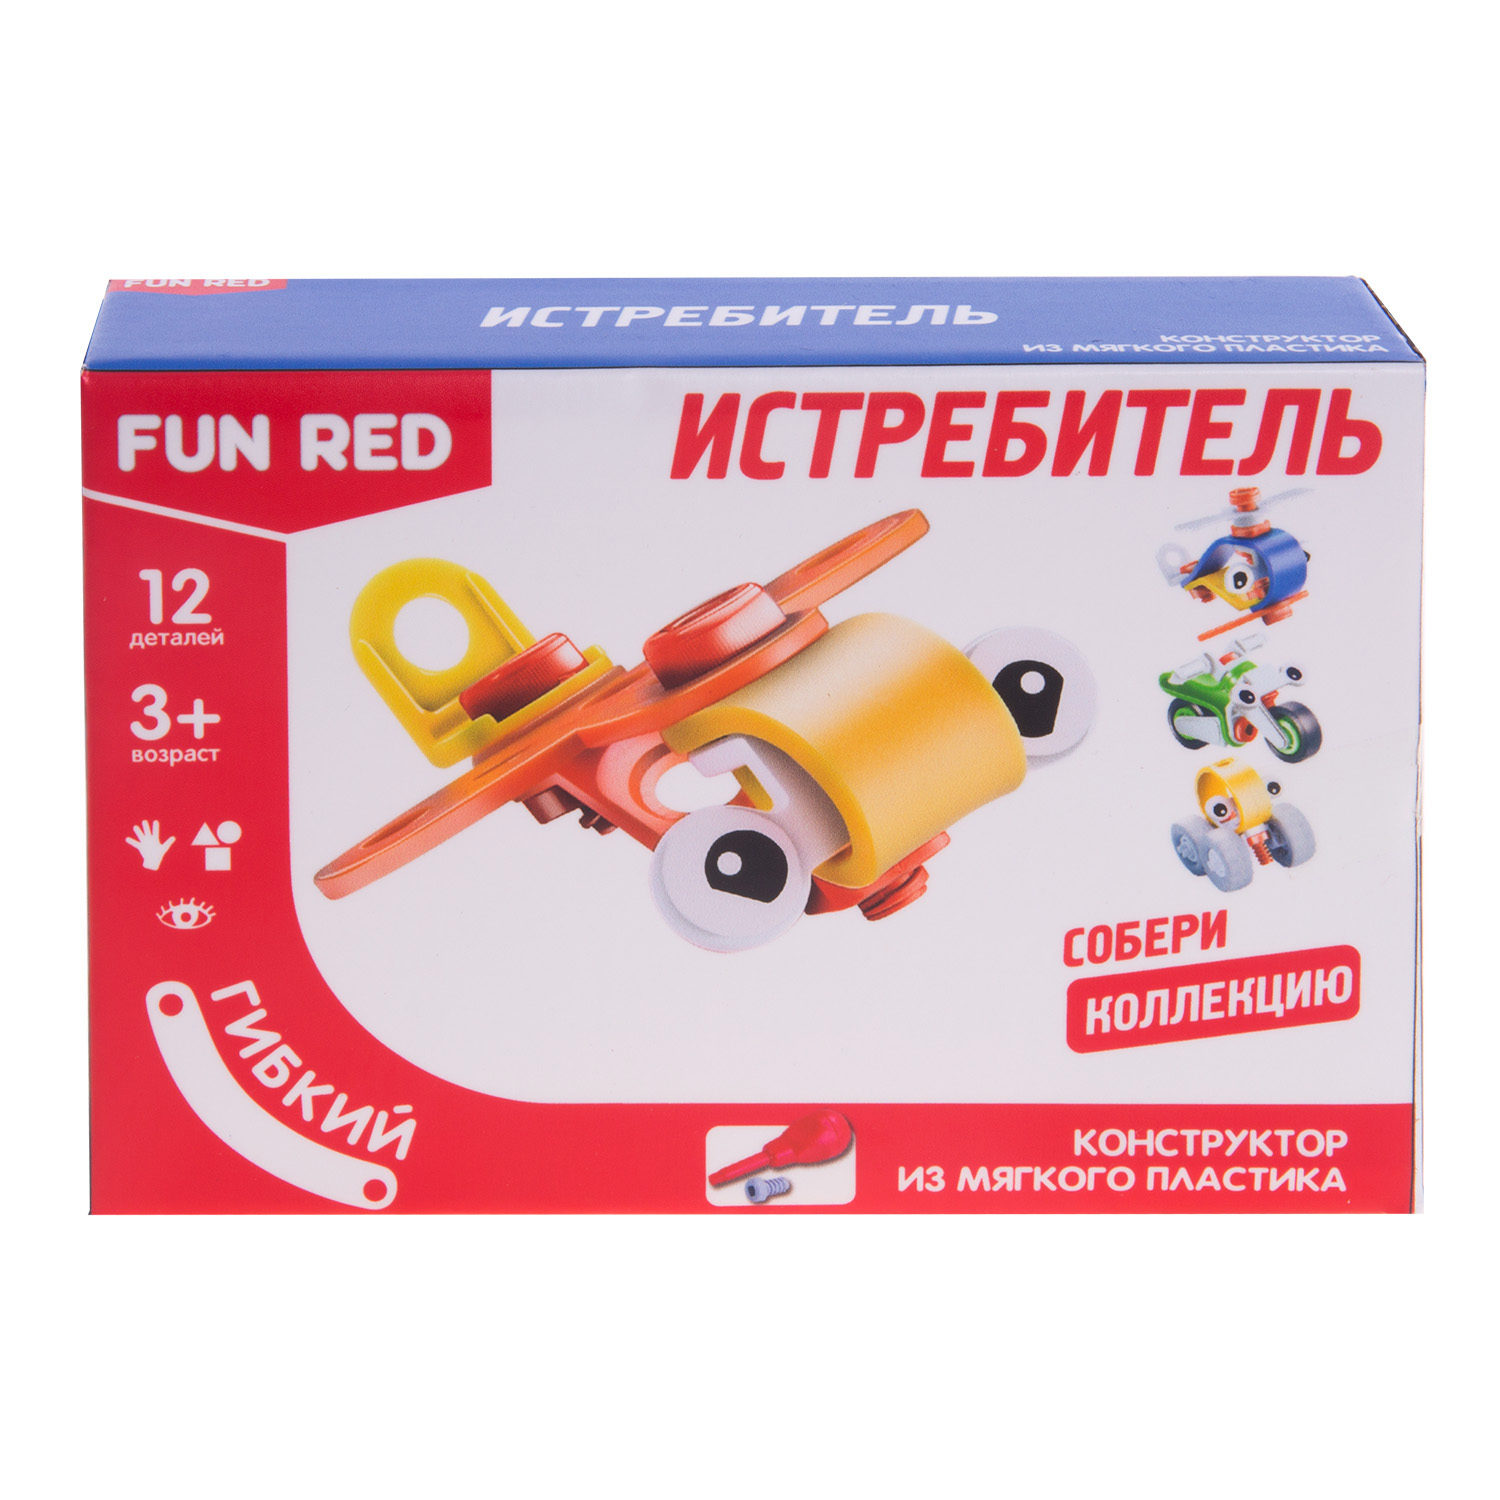 Fun Red Конструктор гибкий Истребитель